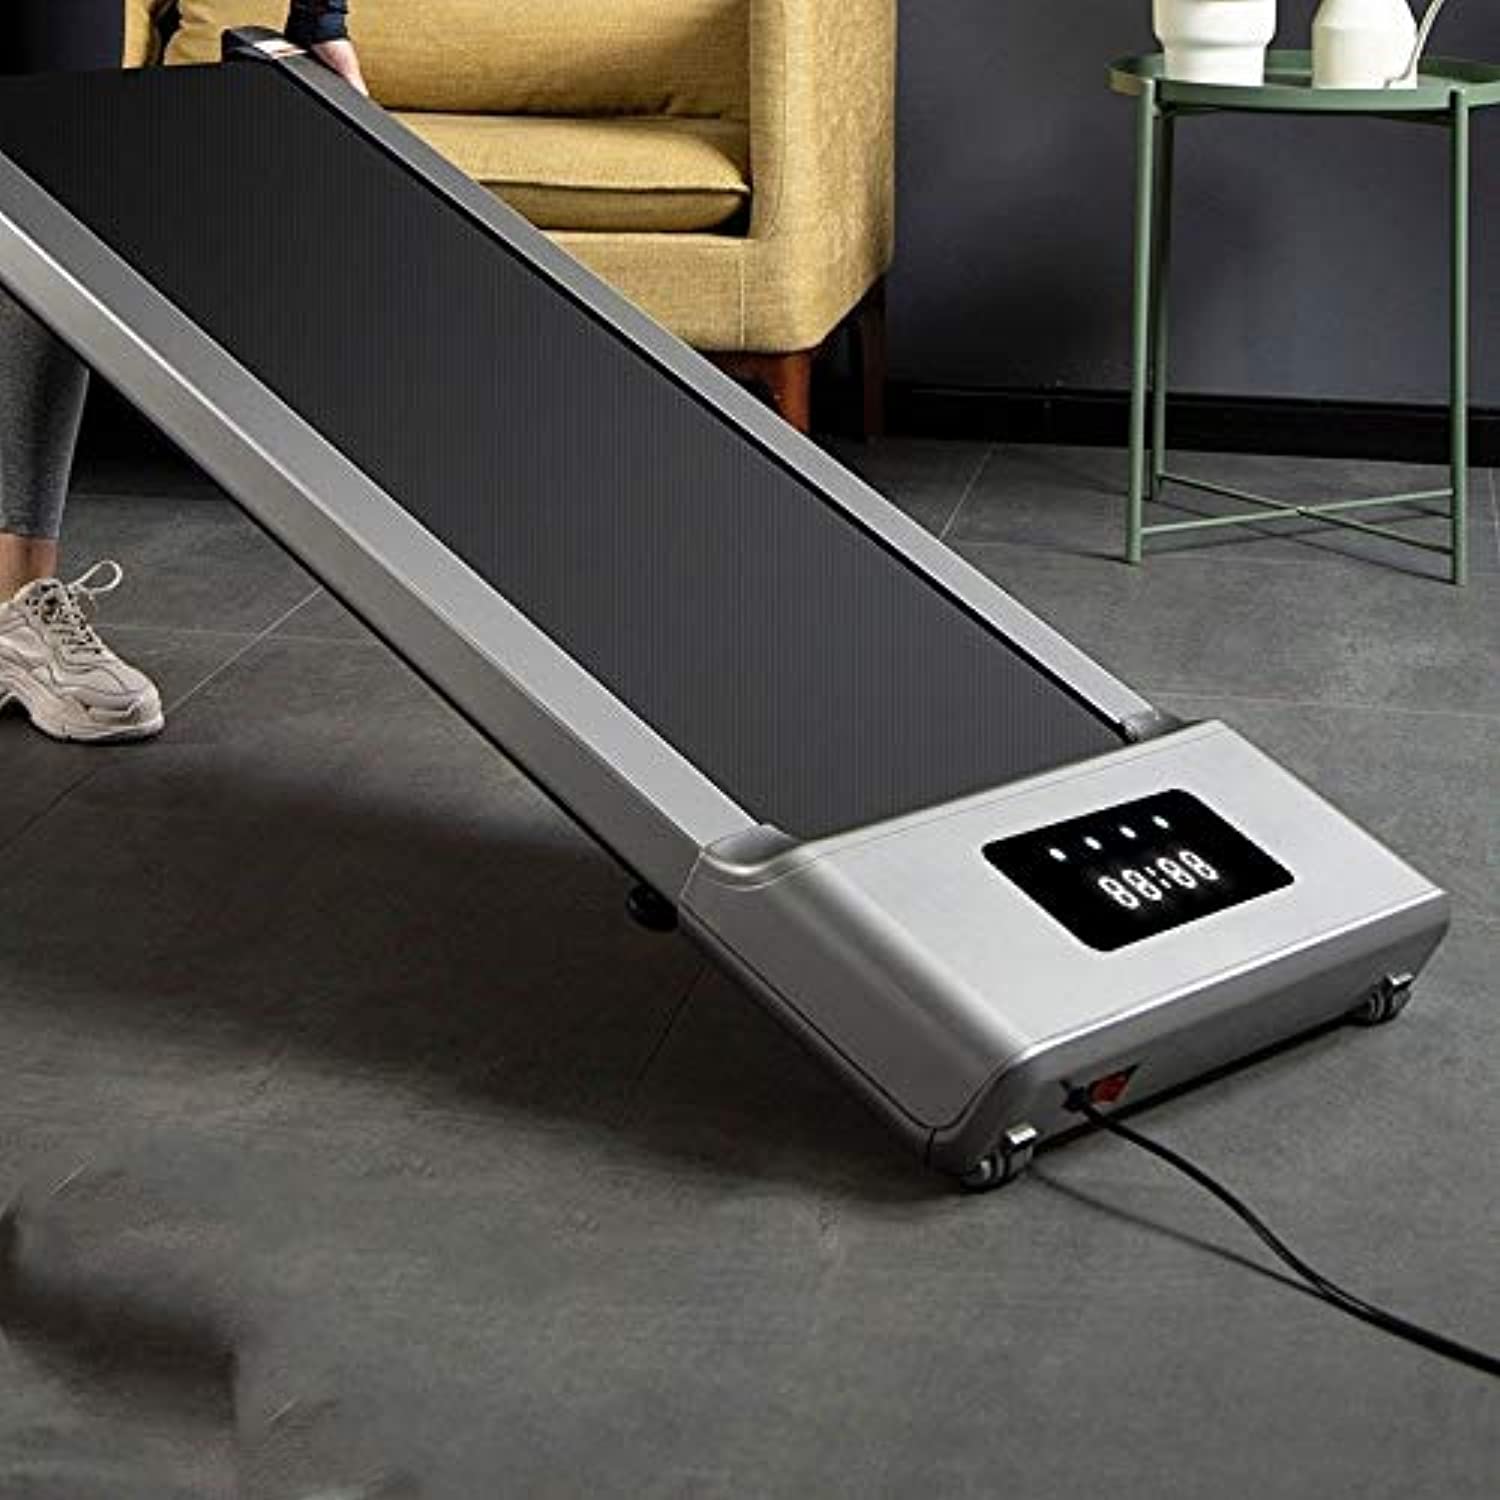 Zzfni Treadmill Household Flat All-Electric Treadmill, Indoor Gym Folding Treadmill Mini Ultra-Quiet Foldable Treadmill